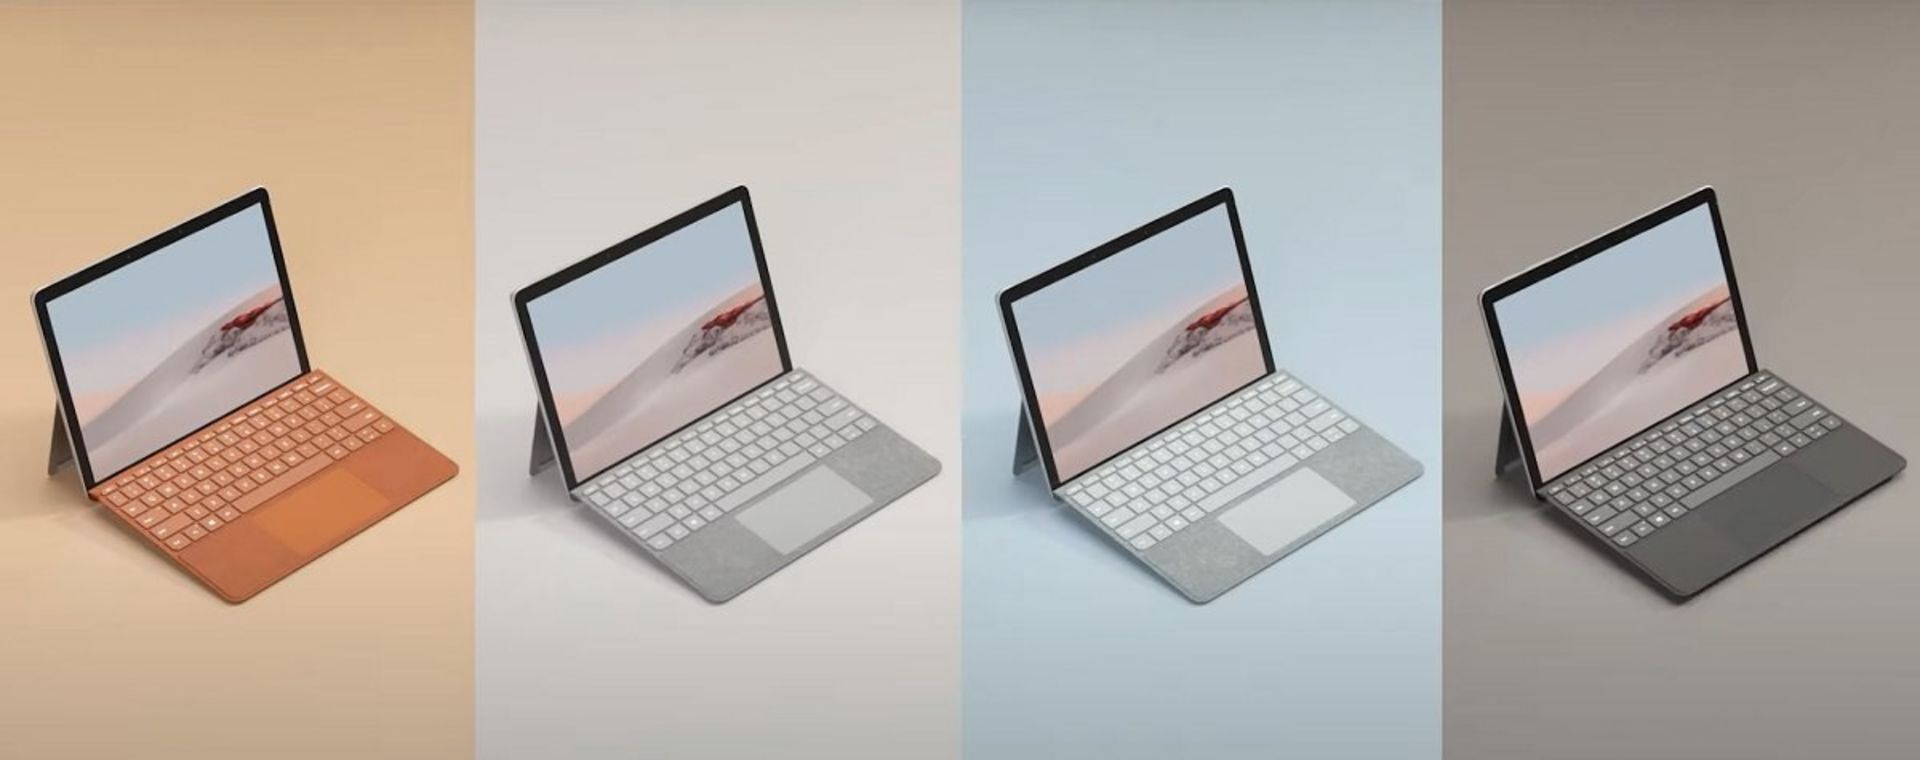 مرجع متخصصين ايران Surface Go 2 Type Cover / كيبورد تايپ كاور سرفيس گو ۲